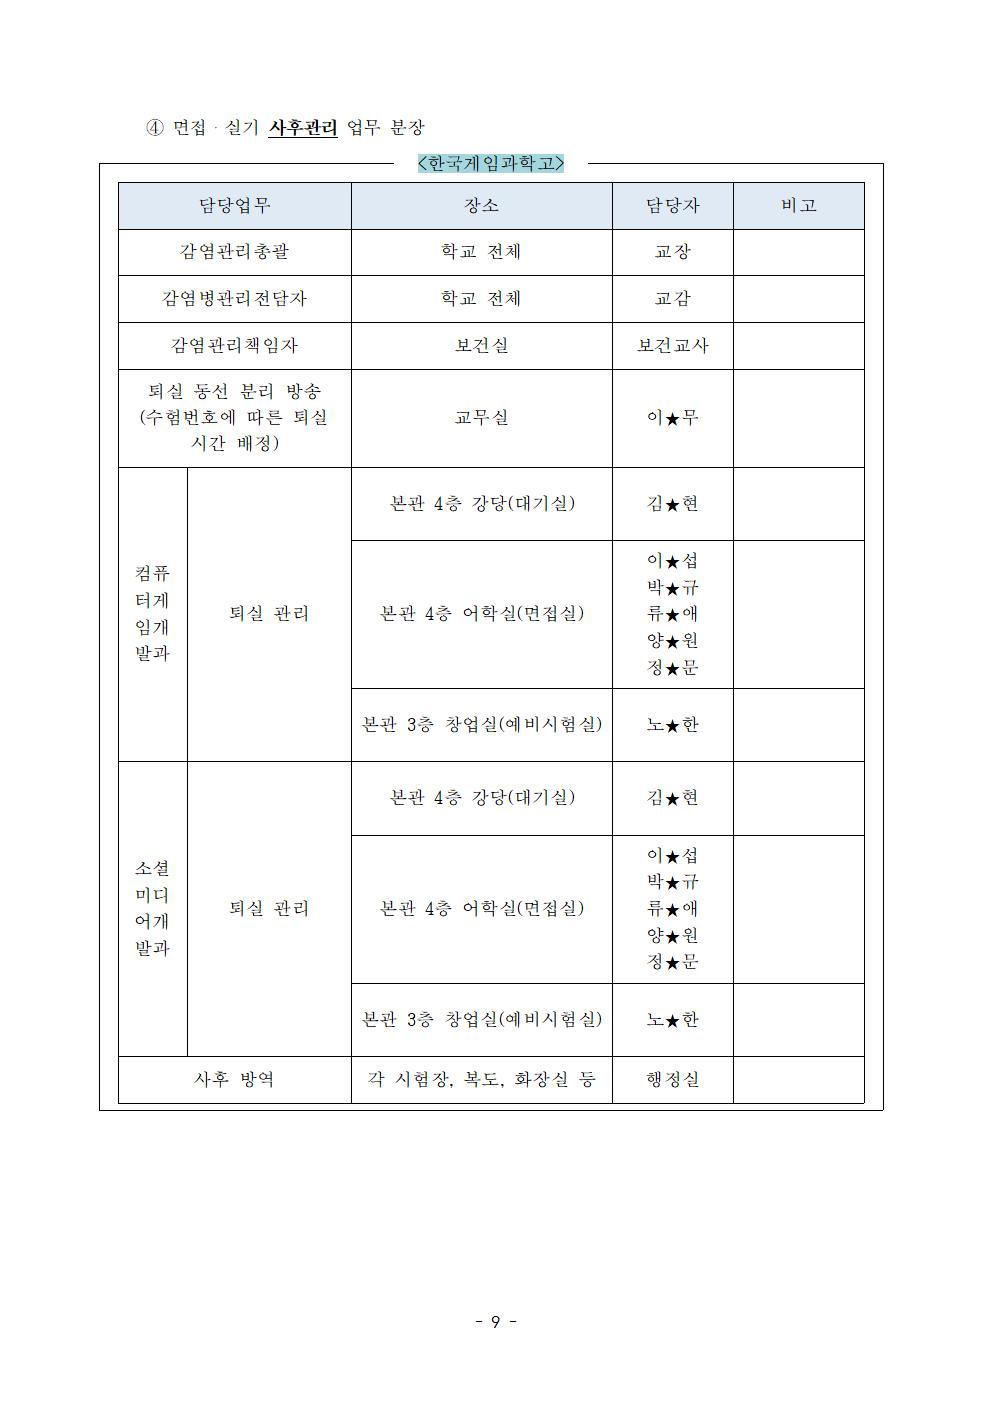 2021학년도 학교별 입학전형 안전관리 계획_한국게임과학고(홈페이지게시)011